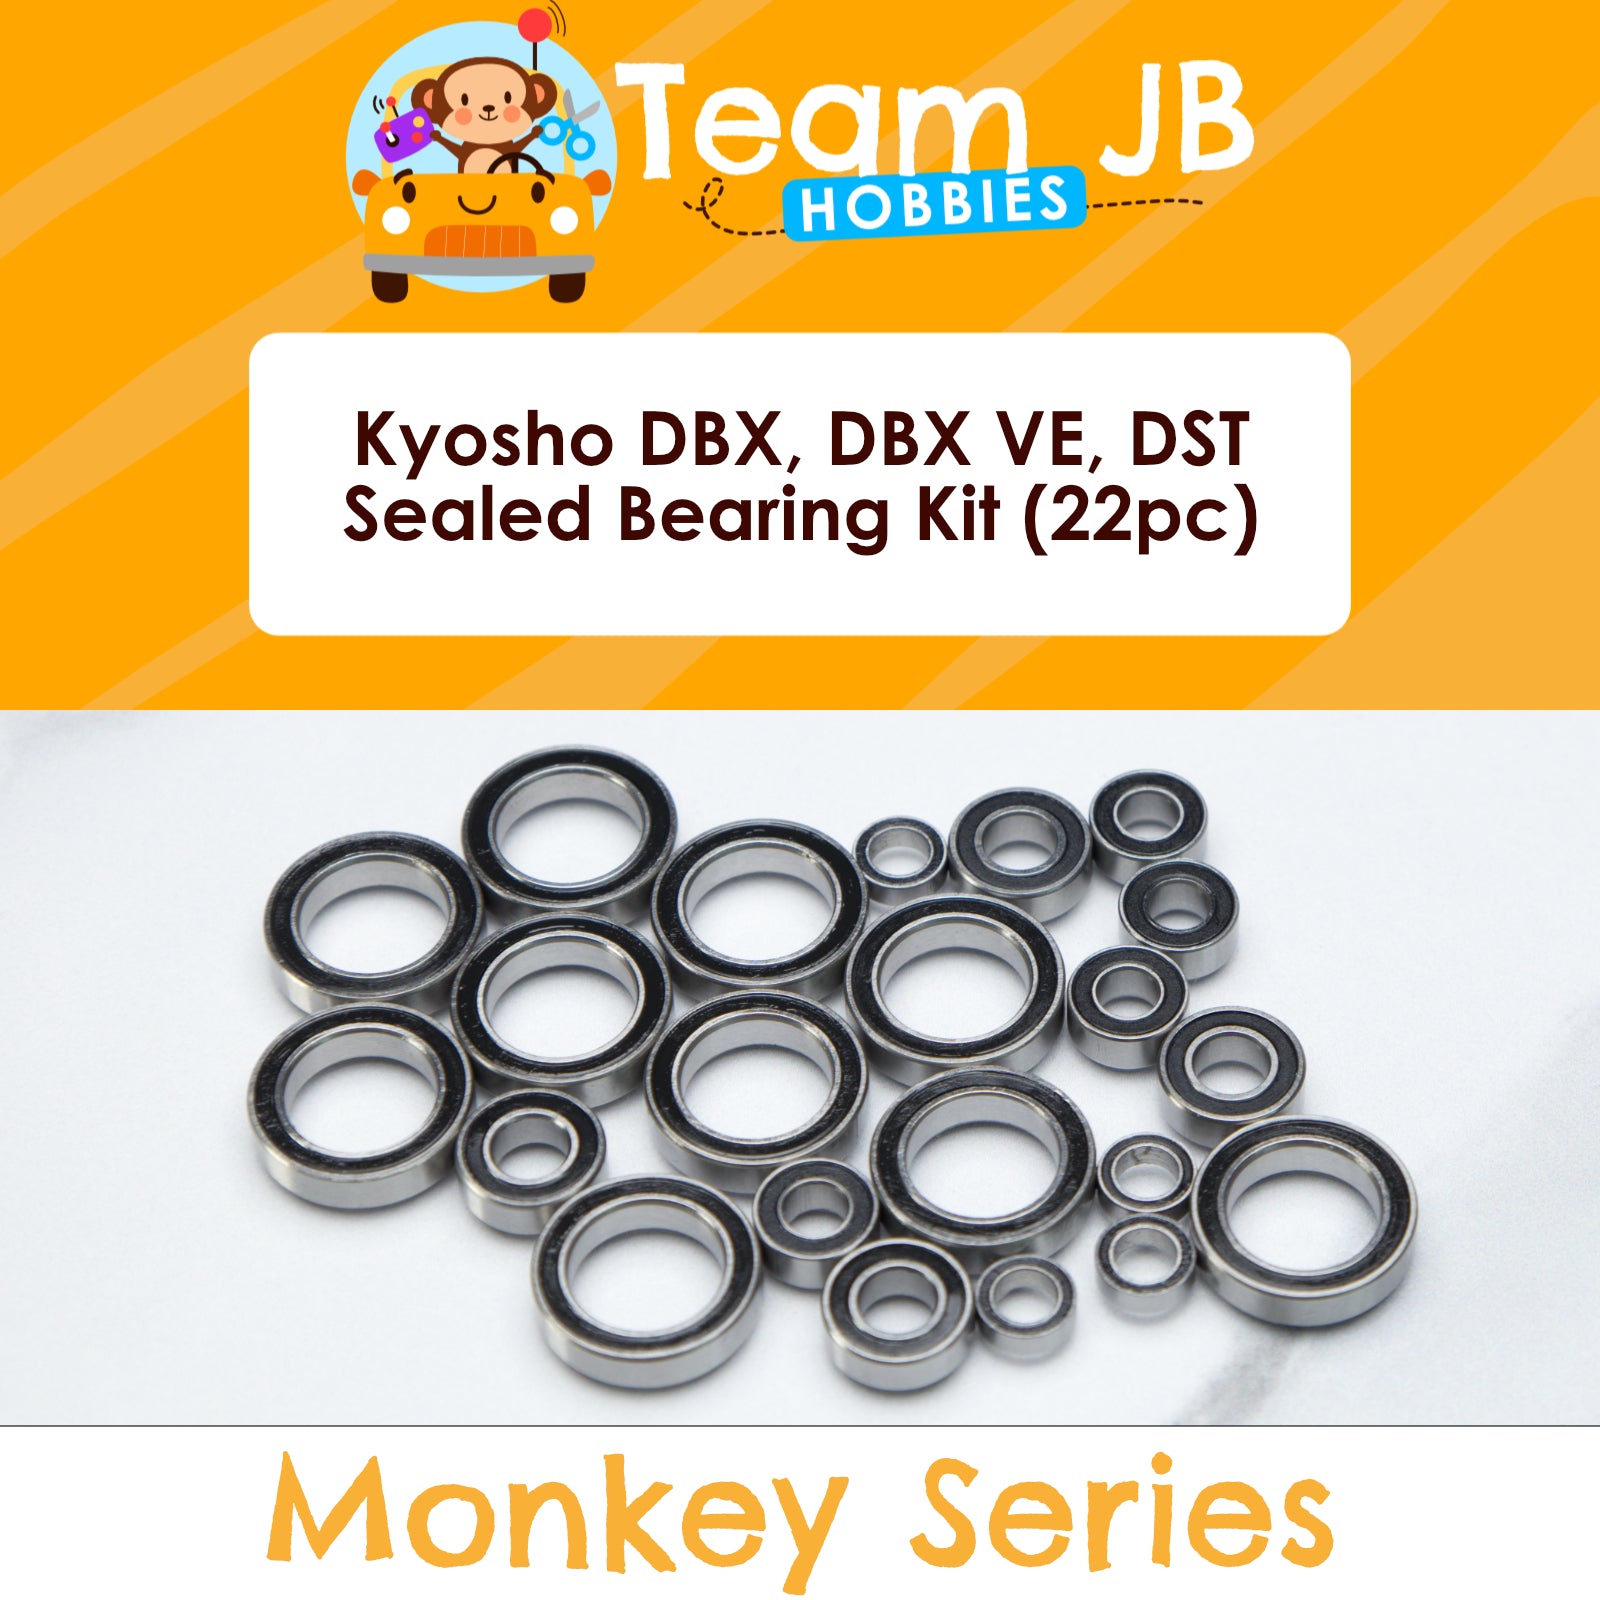 Kyosho DBX, DBX VE, DST - Sealed Bearing Kit